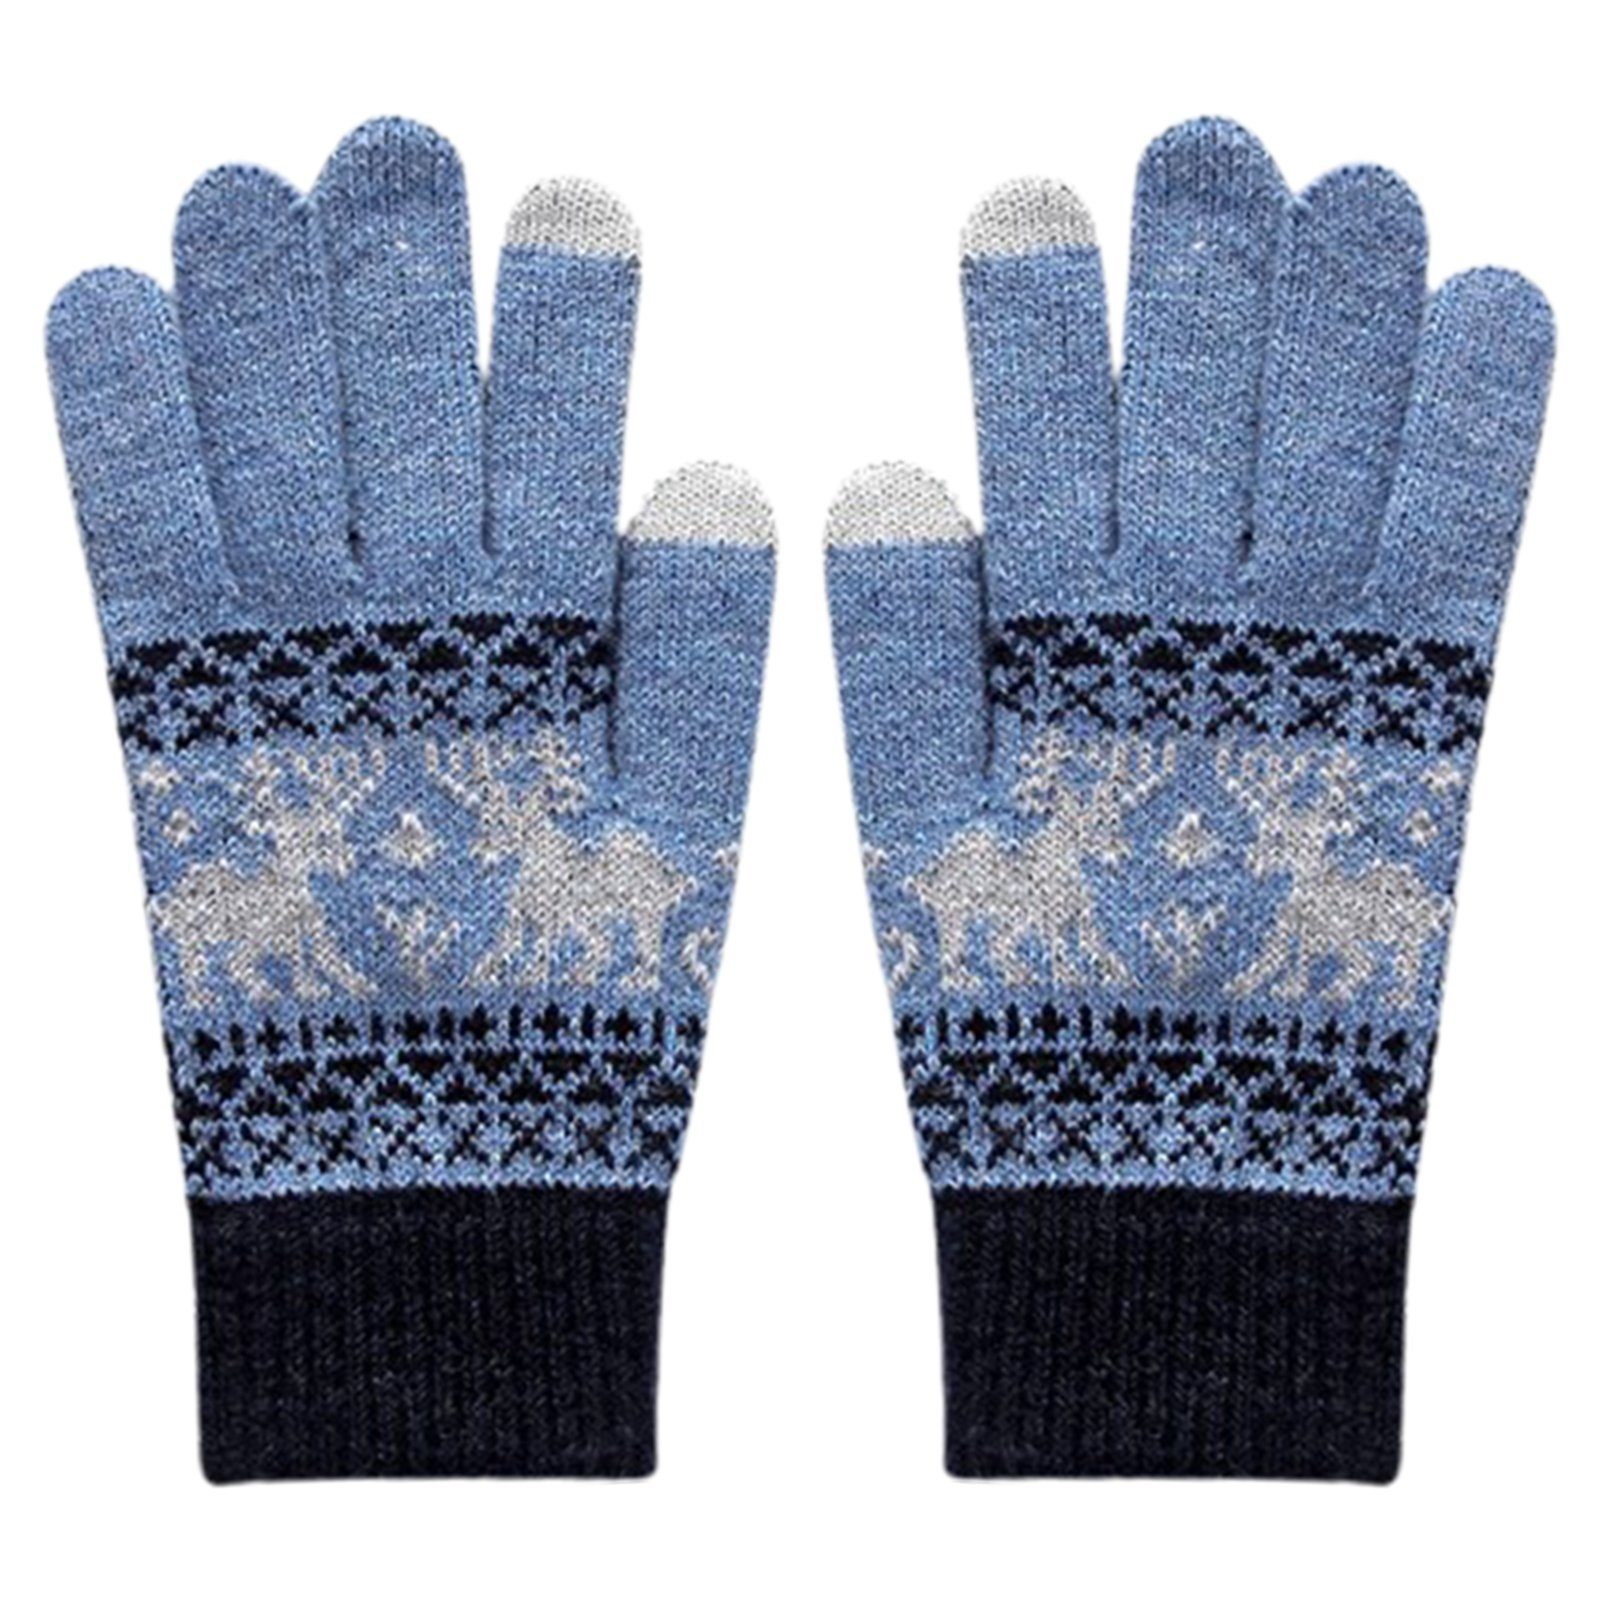 Fleecehandschuhe Verdickte Blusmart marineblau Strickhandschuhe himmelblau Damenhandschuhe, Gestrickte Wärmende Touchscreen-Handschuhe